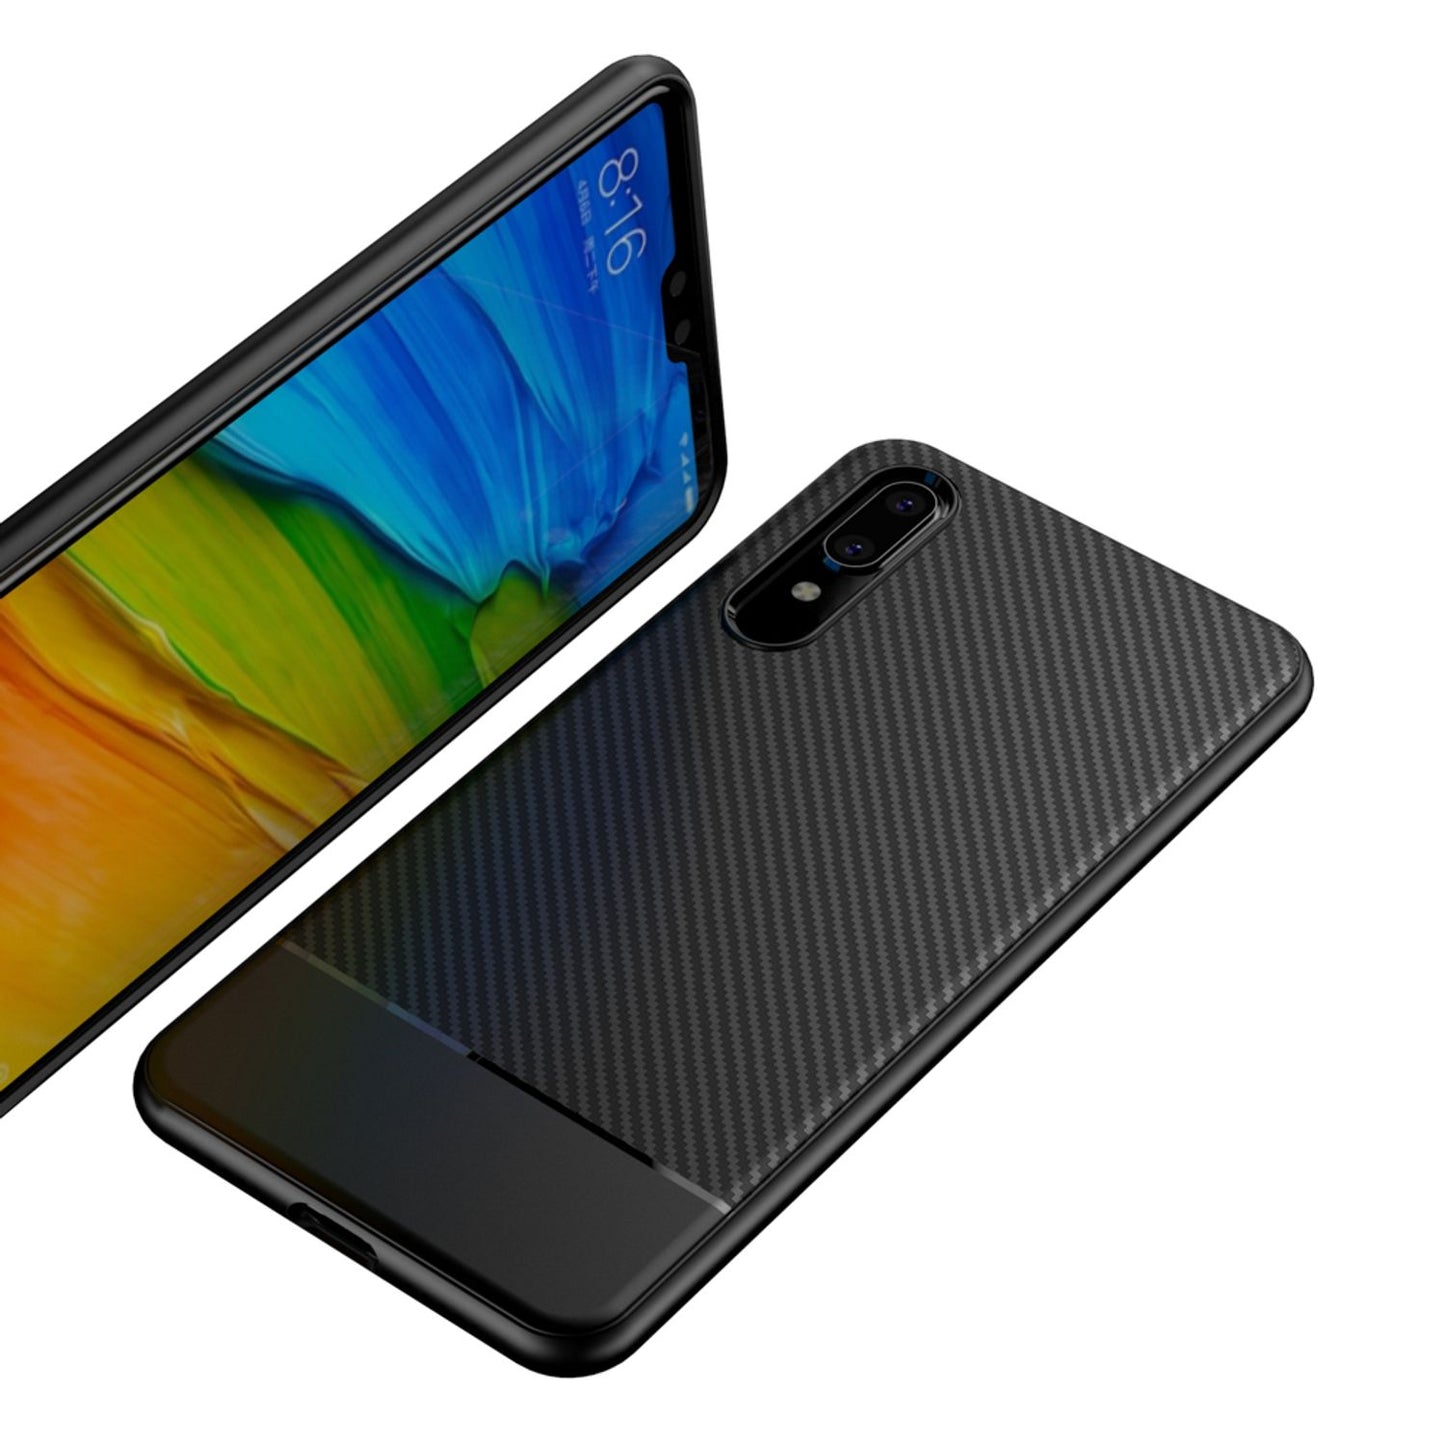 Huawei P20 Handy Hülle von NALIA, Slim Silikon Case Dünne Carbon Look Schutz